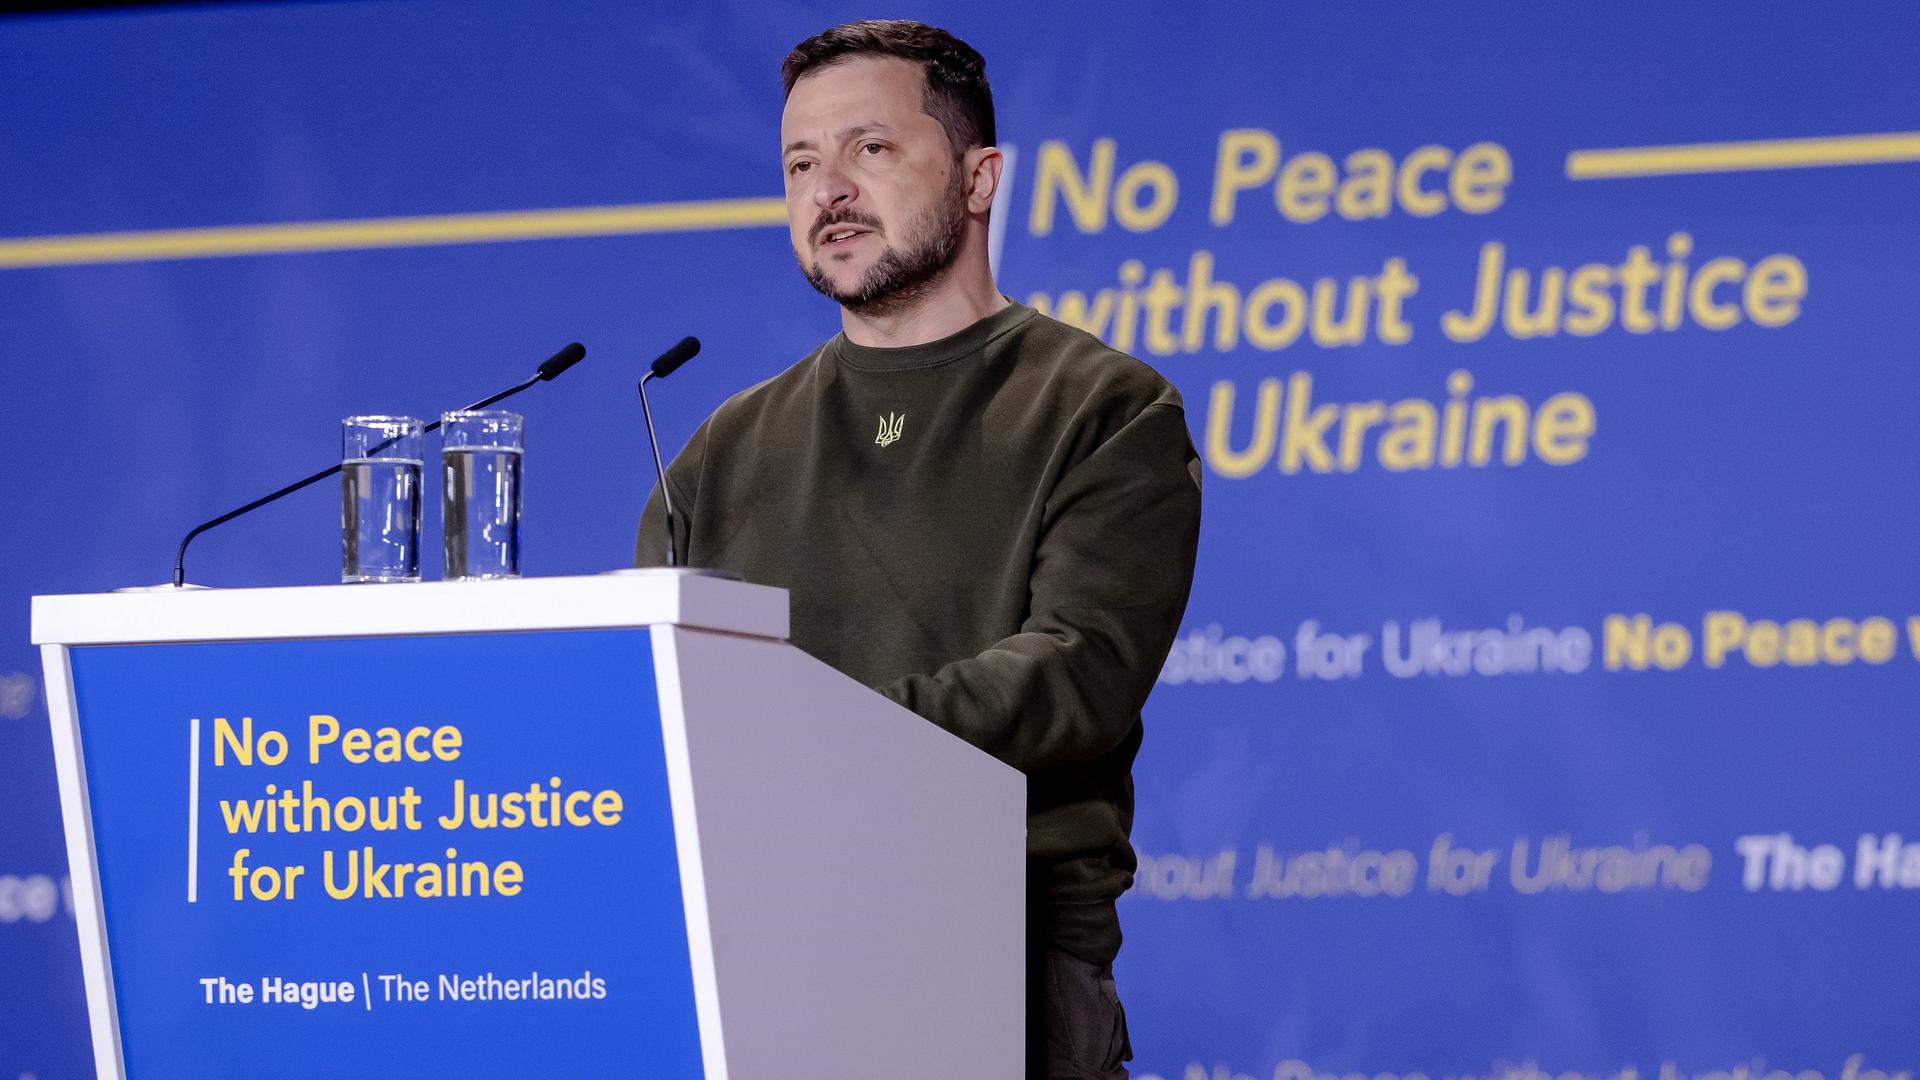 Der ukrainische Präsident Selenskyj steht bei seiner Rede auf dem Internationalen Strafgerichtshof in Den Haag hinter einem Rednerpult. Darauf steht: No Peace without Justice for Ukraine.